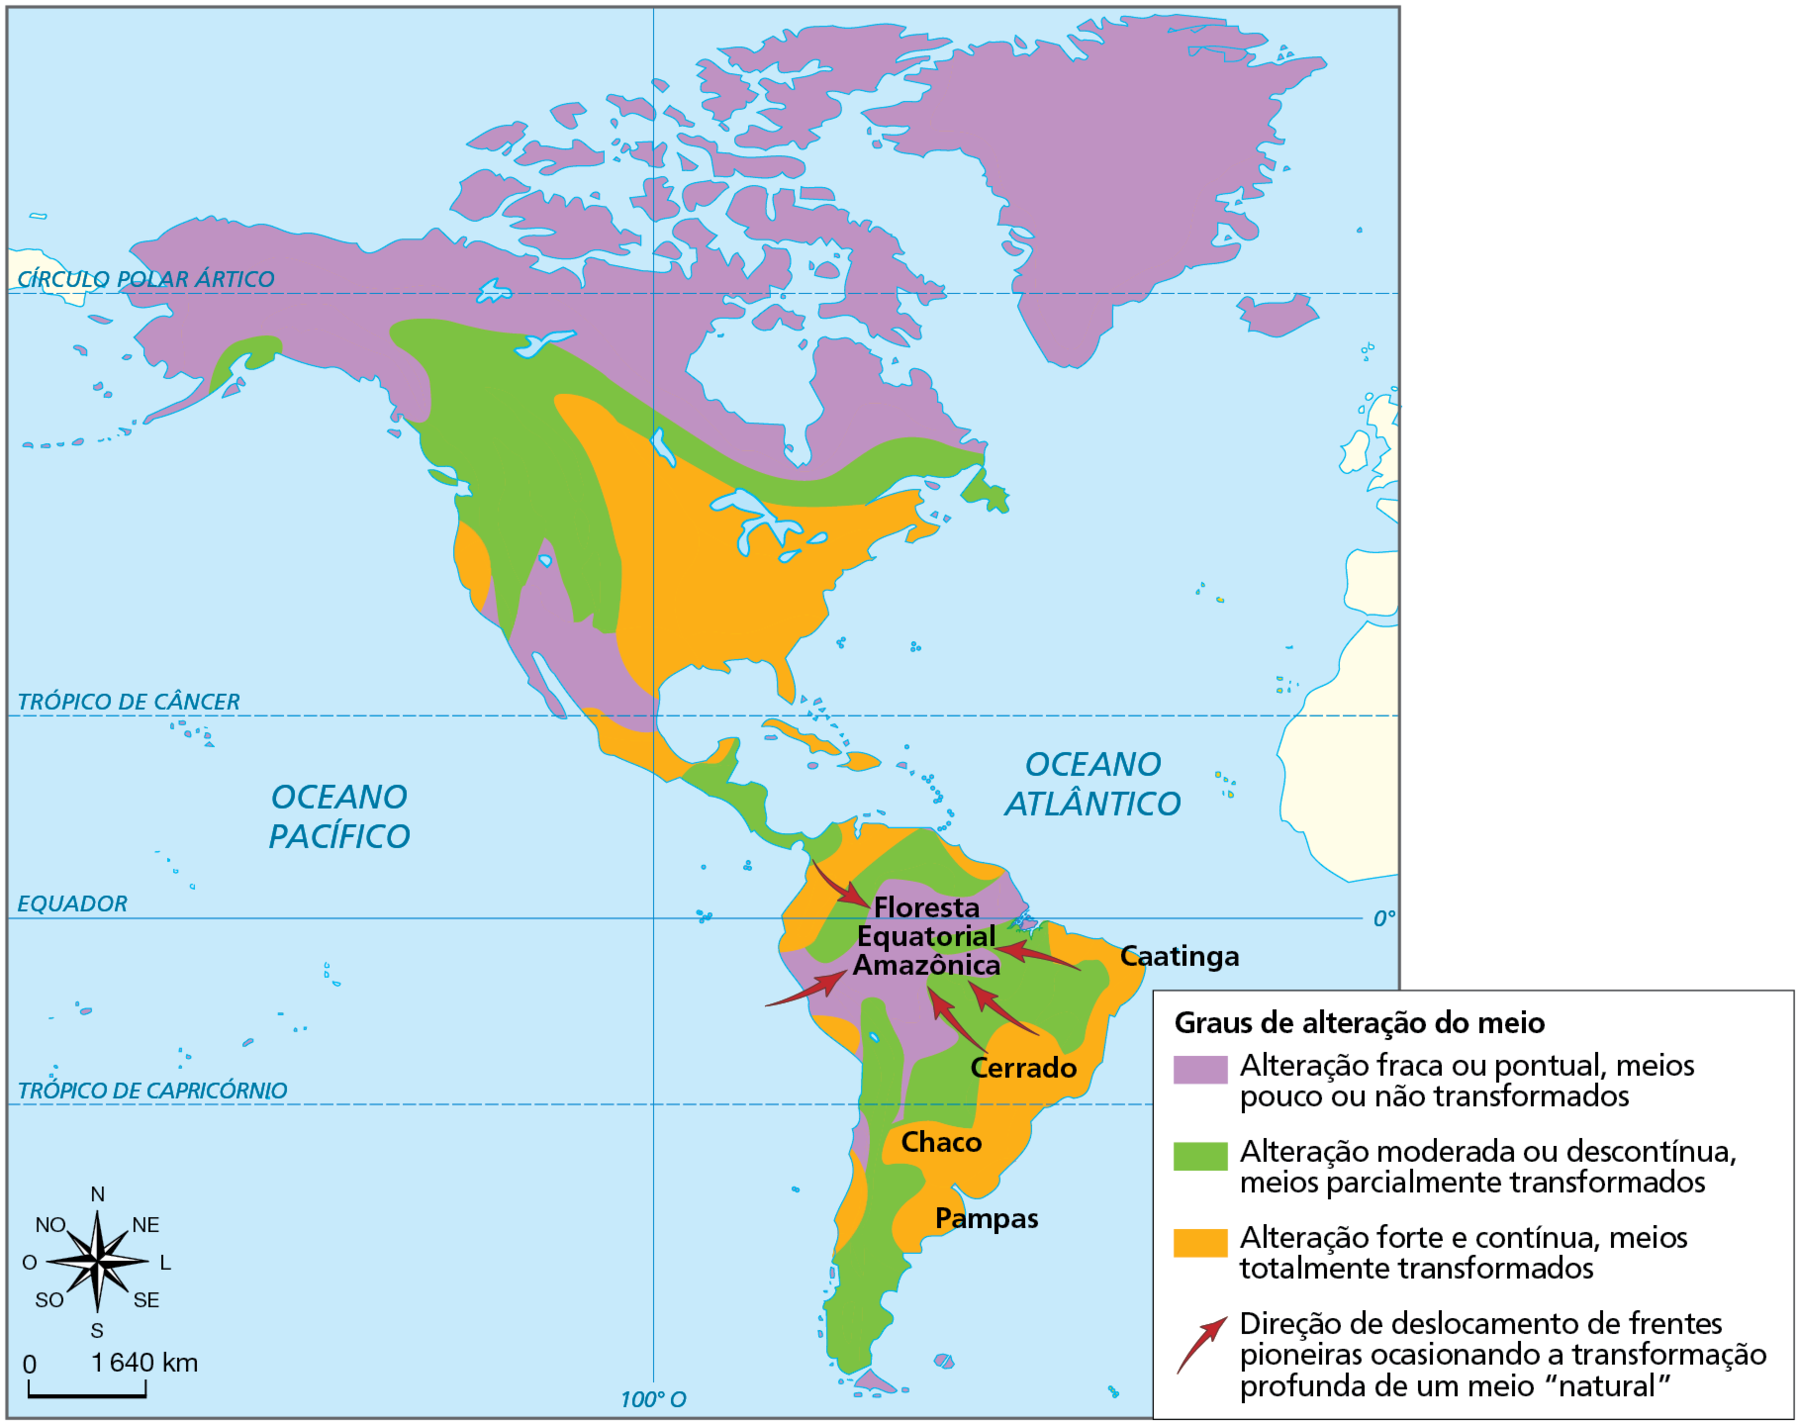 Mapa. América: graus de alteração humana em alguns biomas e regiões naturais.  Mapa do continente americano representando o grau das alterações dos biomas e regiões naturais em seu território.  Alteração fraca ou pontual,  meios pouco ou não transformados, em lilás: extremo norte e norte da América do Norte, faixa no sudoeste da América do Norte e porção norte e noroeste da América do Sul, onde se localiza a Floresta Equatorial Amazônica.  Alteração moderada ou descontínua, meios parcialmente transformados, em verde: faixa que se estende do sul da América do Sul, alcança porção centro-oeste e interior da Região Nordeste do Brasil e contorna a Floresta Equatorial Amazônica.  Faixa que sai da costa oeste e do centro da da América do Norte na direção norte, estendendo-se até a porção leste.  Alteração forte e contínua, meios totalmente transformados, em laranja: Pampas no sul da América do Sul, Chaco, centro-sul da América do Sul (área de Cerrado), leste da América do Sul, onde há Caatinga. Pequena faixa na porção noroeste da América do Sul. Extremo sul, pequena faixa a oeste e as porções leste, sudeste e parte do sul da América do Norte, onde estão os Grandes Lagos e a Península da Flórida.  Setas vermelhas no mapa indicam a direção de deslocamento de frentes pioneiras ocasionando a transformação profunda de um meio “natural”: da costa leste da América do Sul em direção à Floresta Amazônica, do centro-oeste e do nordeste do Brasil em direção à Floresta Equatorial Amazônica, e do norte e da porção oeste da América do Sul em direção à Floresta Amazônica. Abaixo, à esquerda, rosa dos ventos e escala de 0 a 1.640 quilômetros.